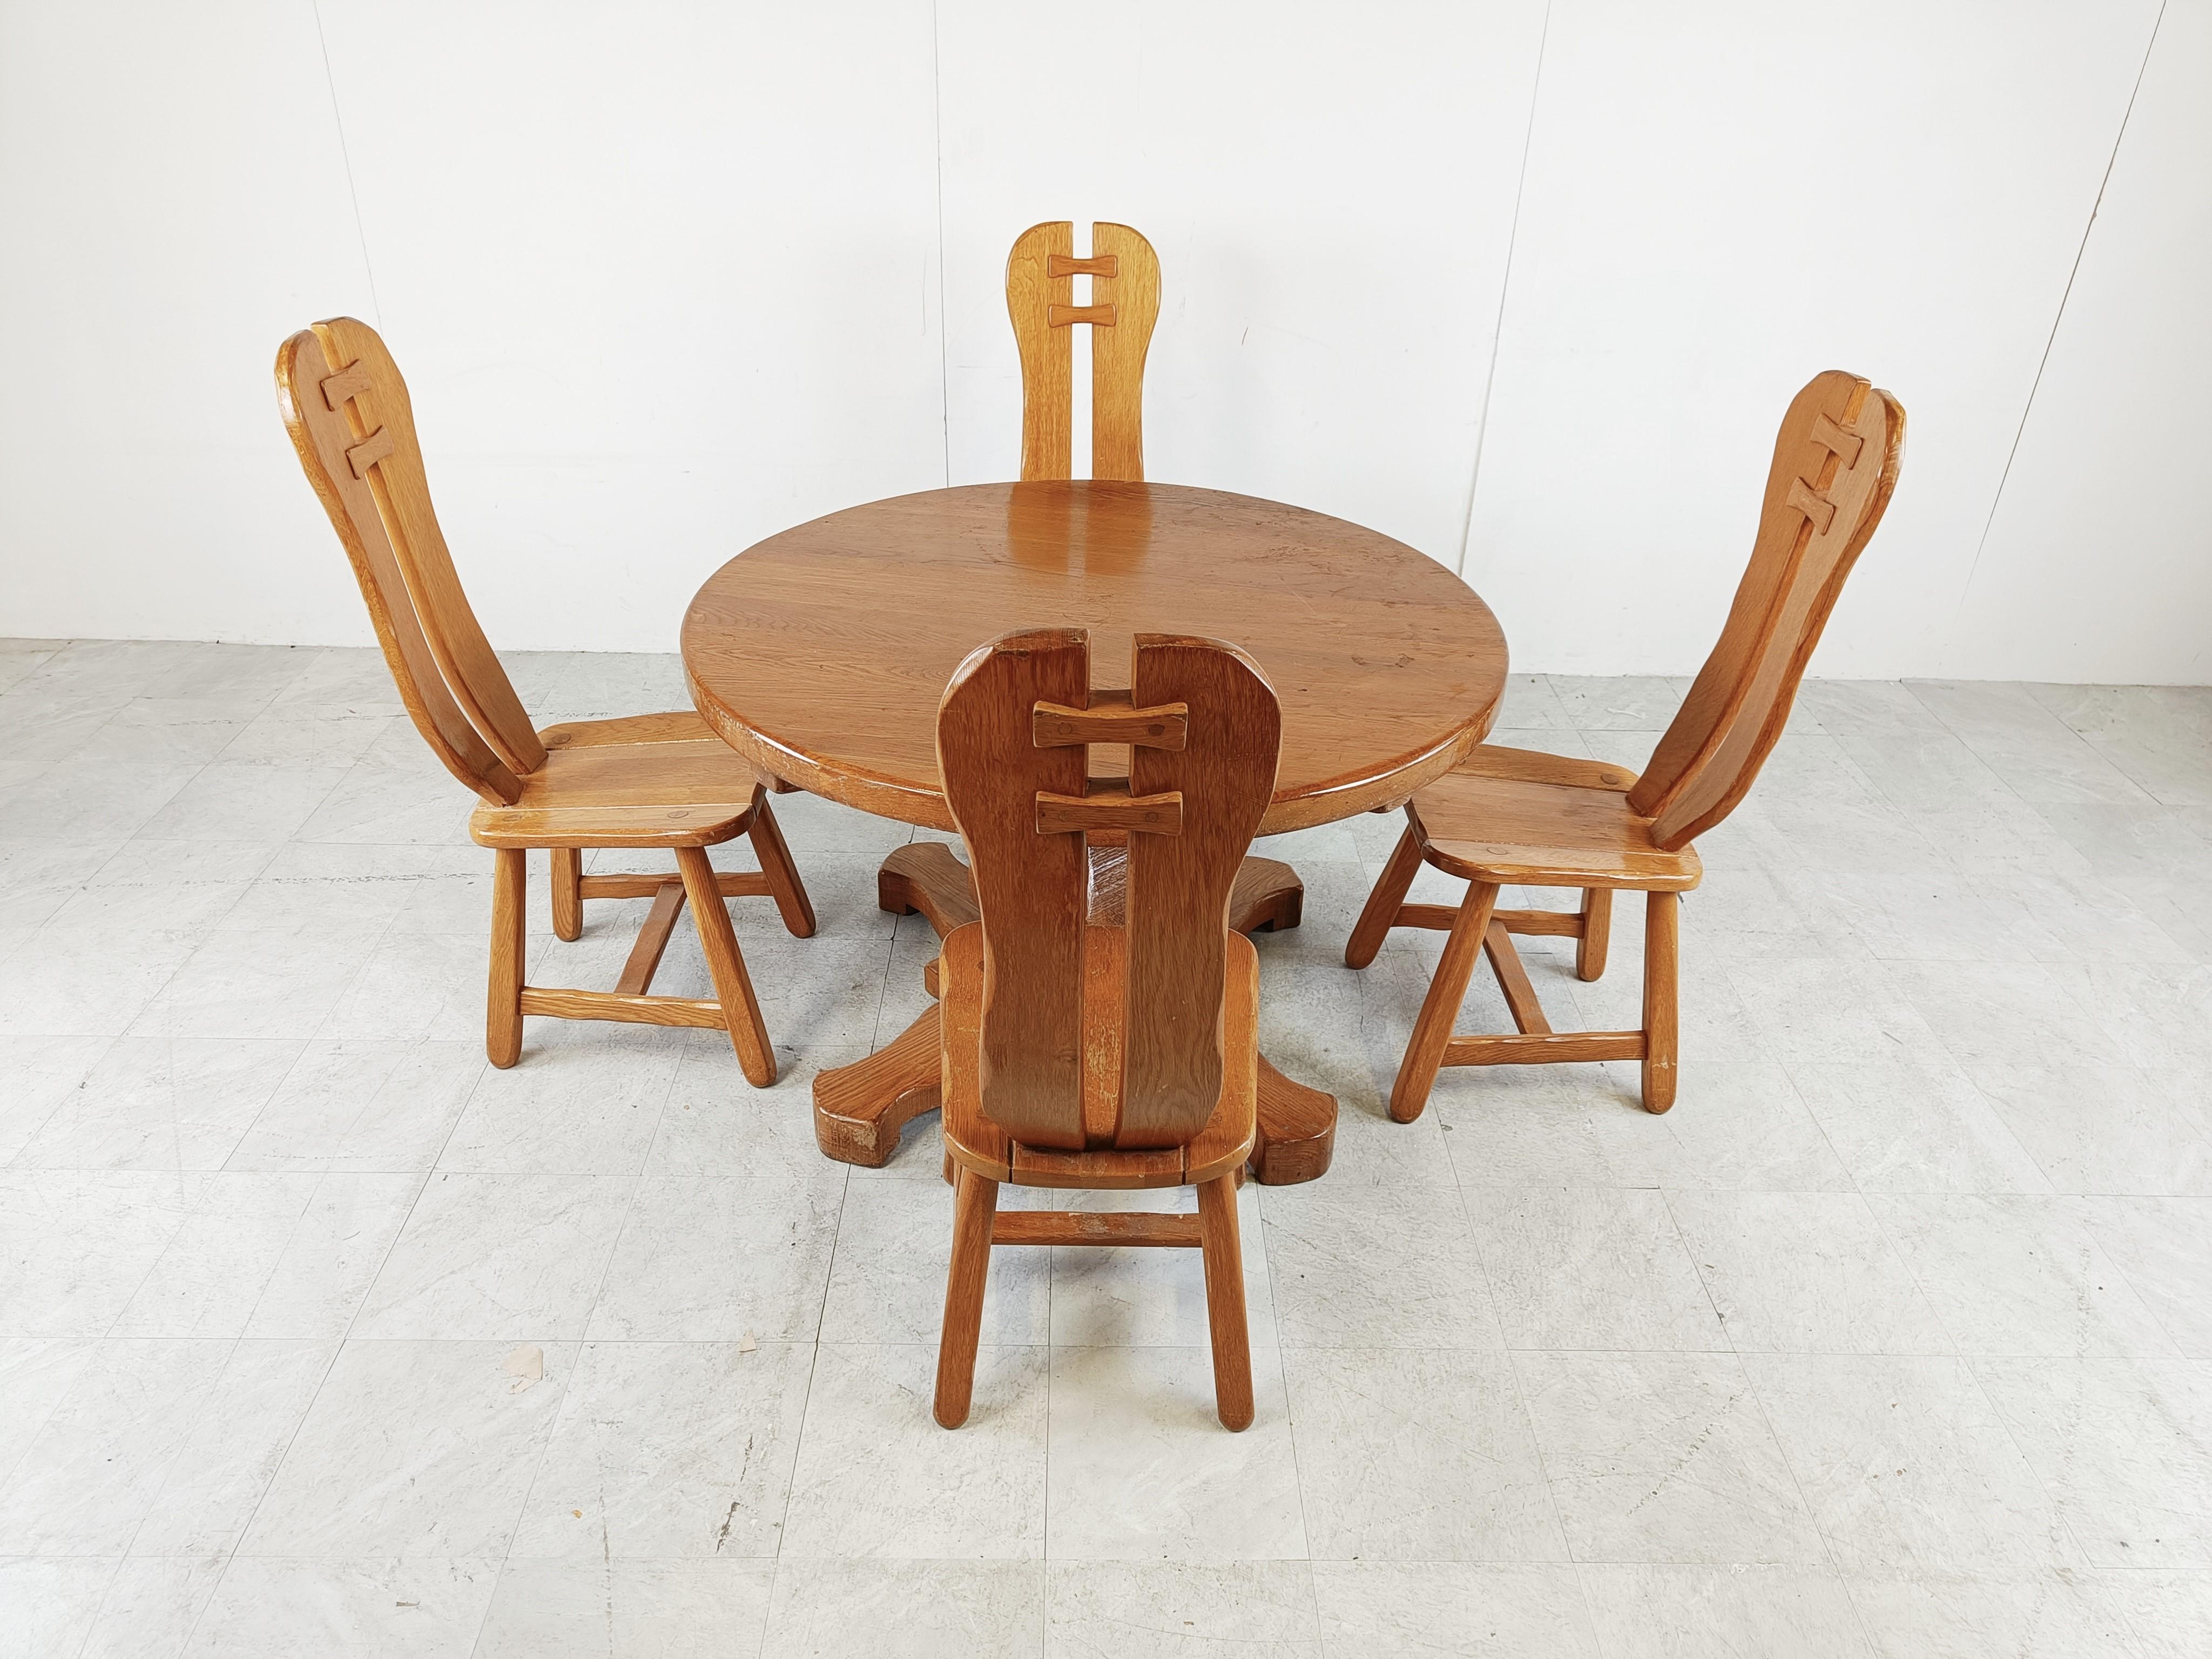 Stabile und handgefertigte Esszimmerstühle mit passendem Tisch, hergestellt von Depuydt Kunstmeubelen in Belgien.

Das gesamte Set ist aus massivem Eichenholz gefertigt.

Es ist selten, dass man Stühle und Tisch hat.

Schöne geteilte Rückwände mit